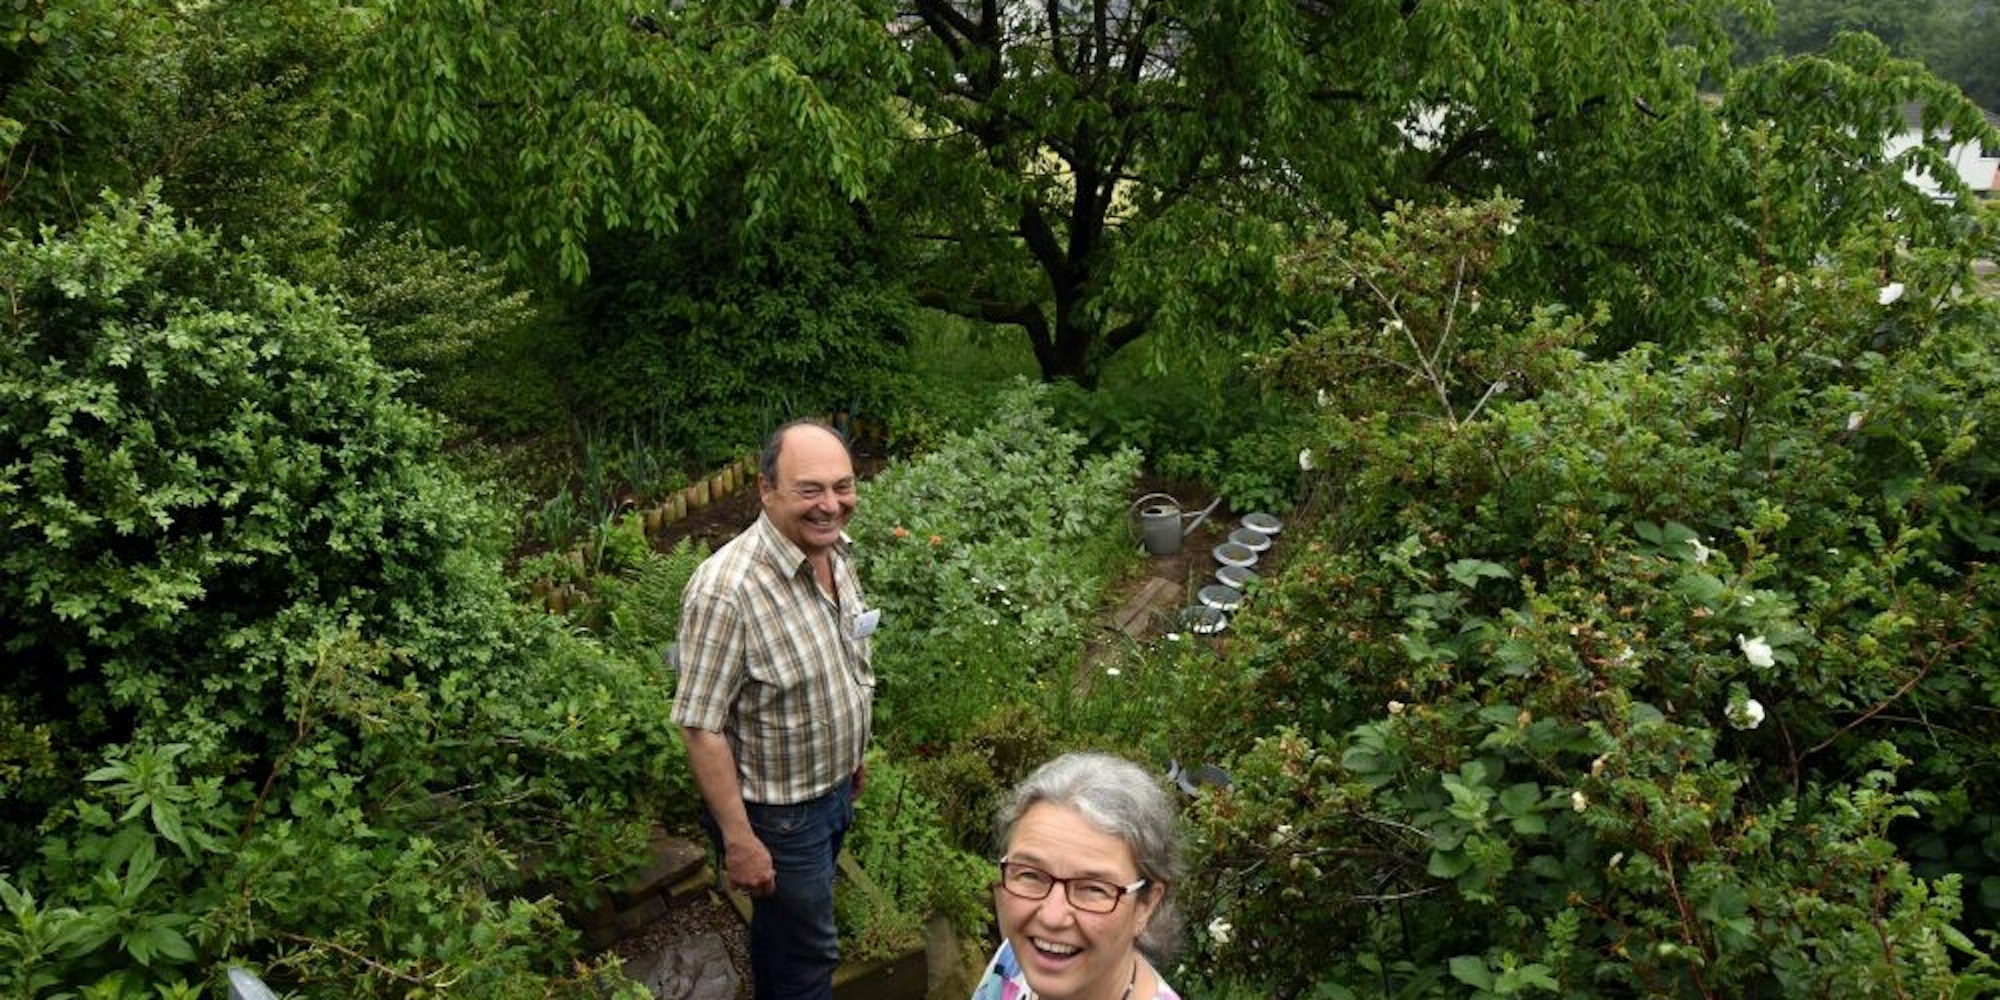 Grauwacke und viel Grün, das ist der Garten von Klaus und Katja Wopfner.